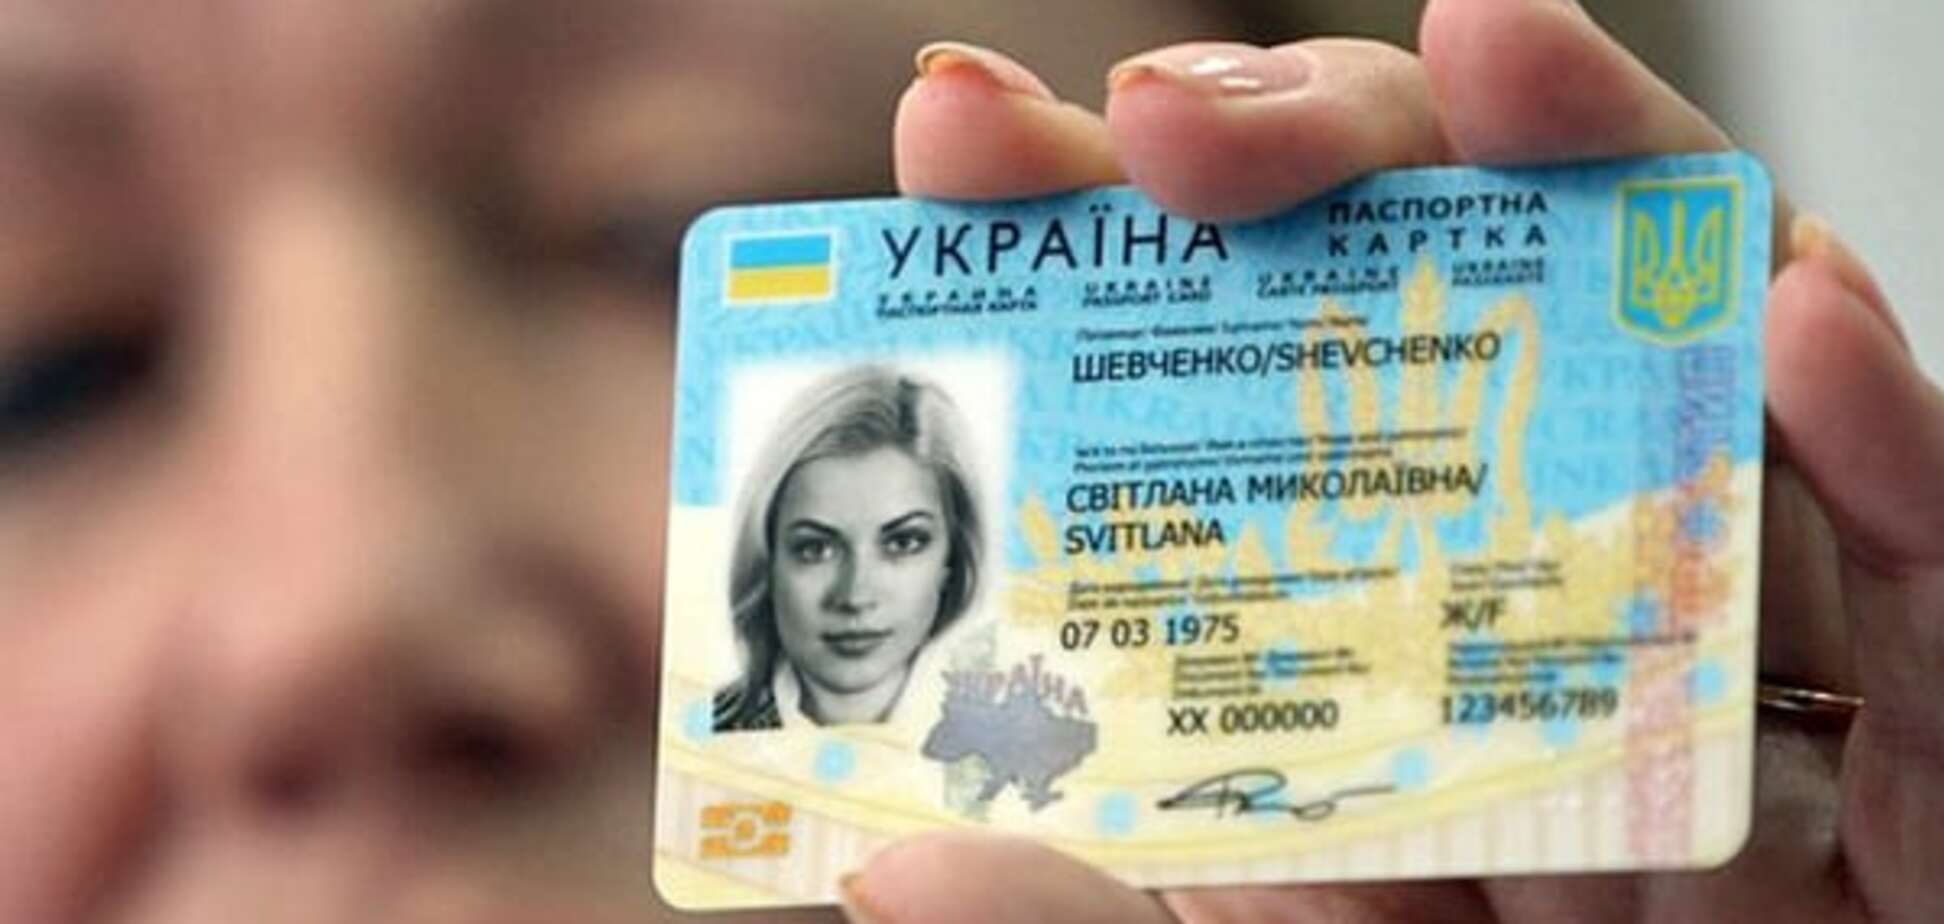 Українцям видаватимуть пластикові паспорти з 14 років: всі подробиці нововведення